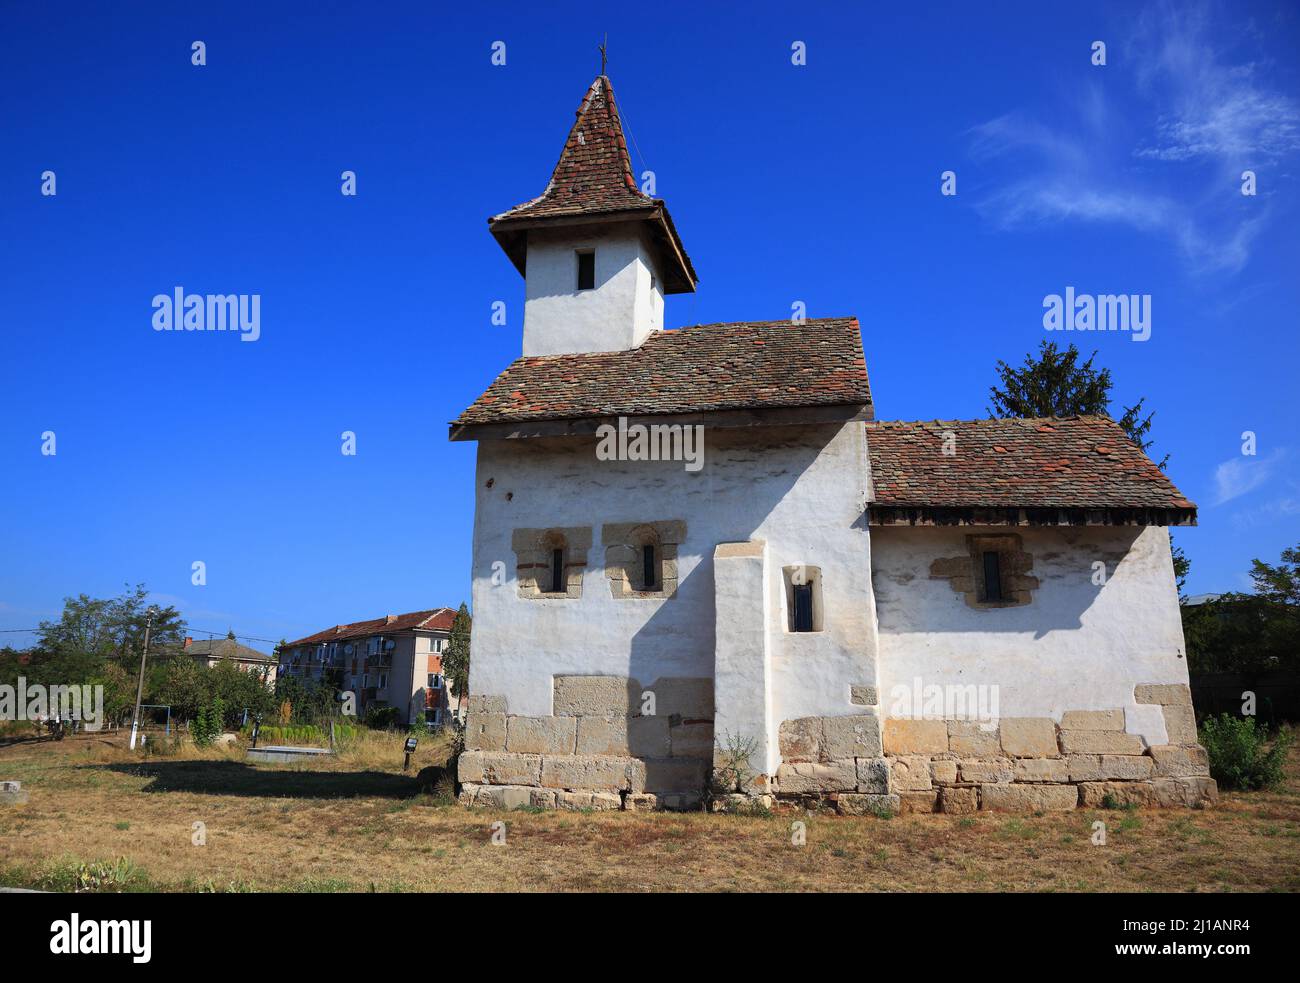 St. Georgs-Kirche in Streisangeorgiu, Calan, Hunedoara County. Erbaut im romanischen Stil zwischen 1313-1314 ist sie eines der ältesten mittelalterlic Stock Photo